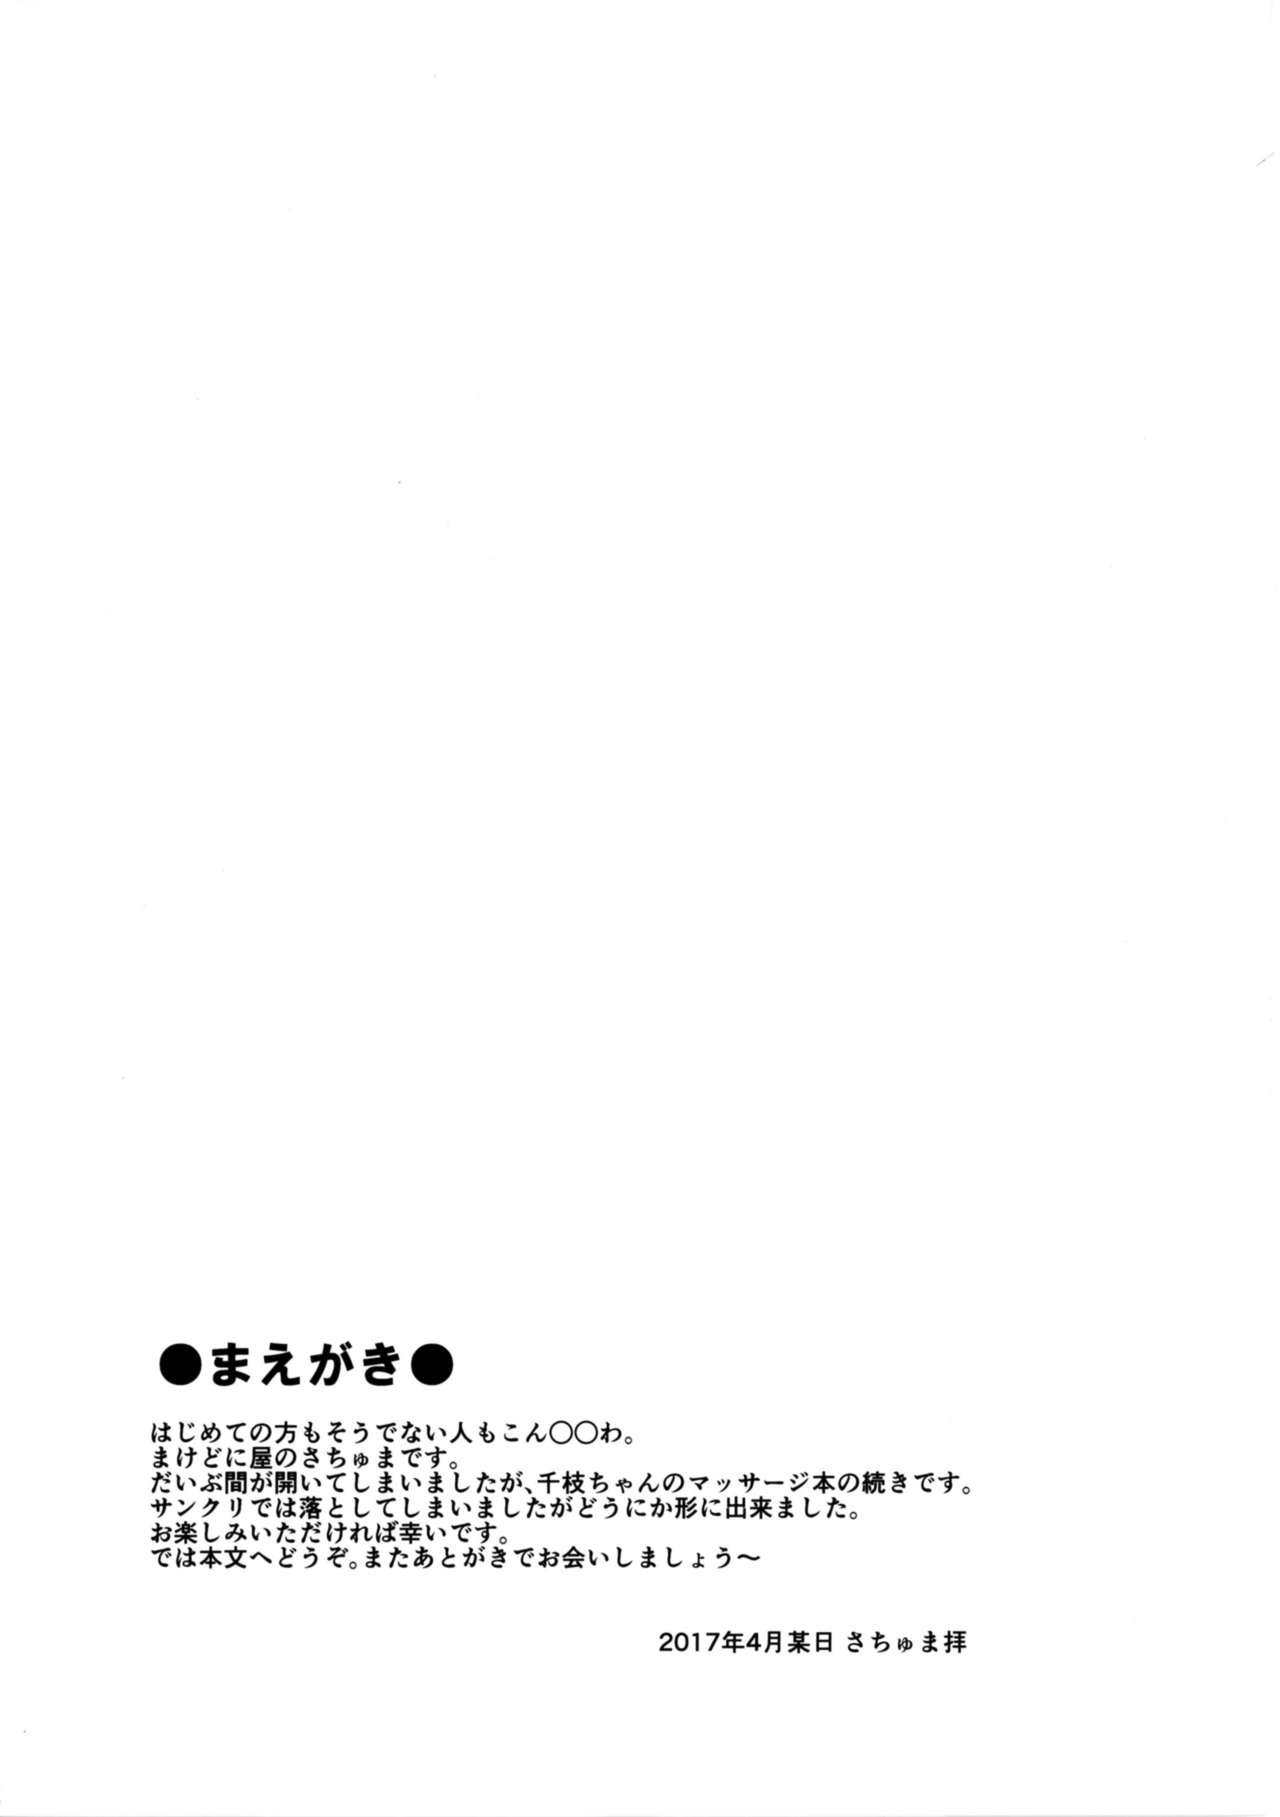 (COMIC1☆11) [まけどに屋 (さちゅま)] FanFanBox33 (アイドルマスター シンデレラガールズ)